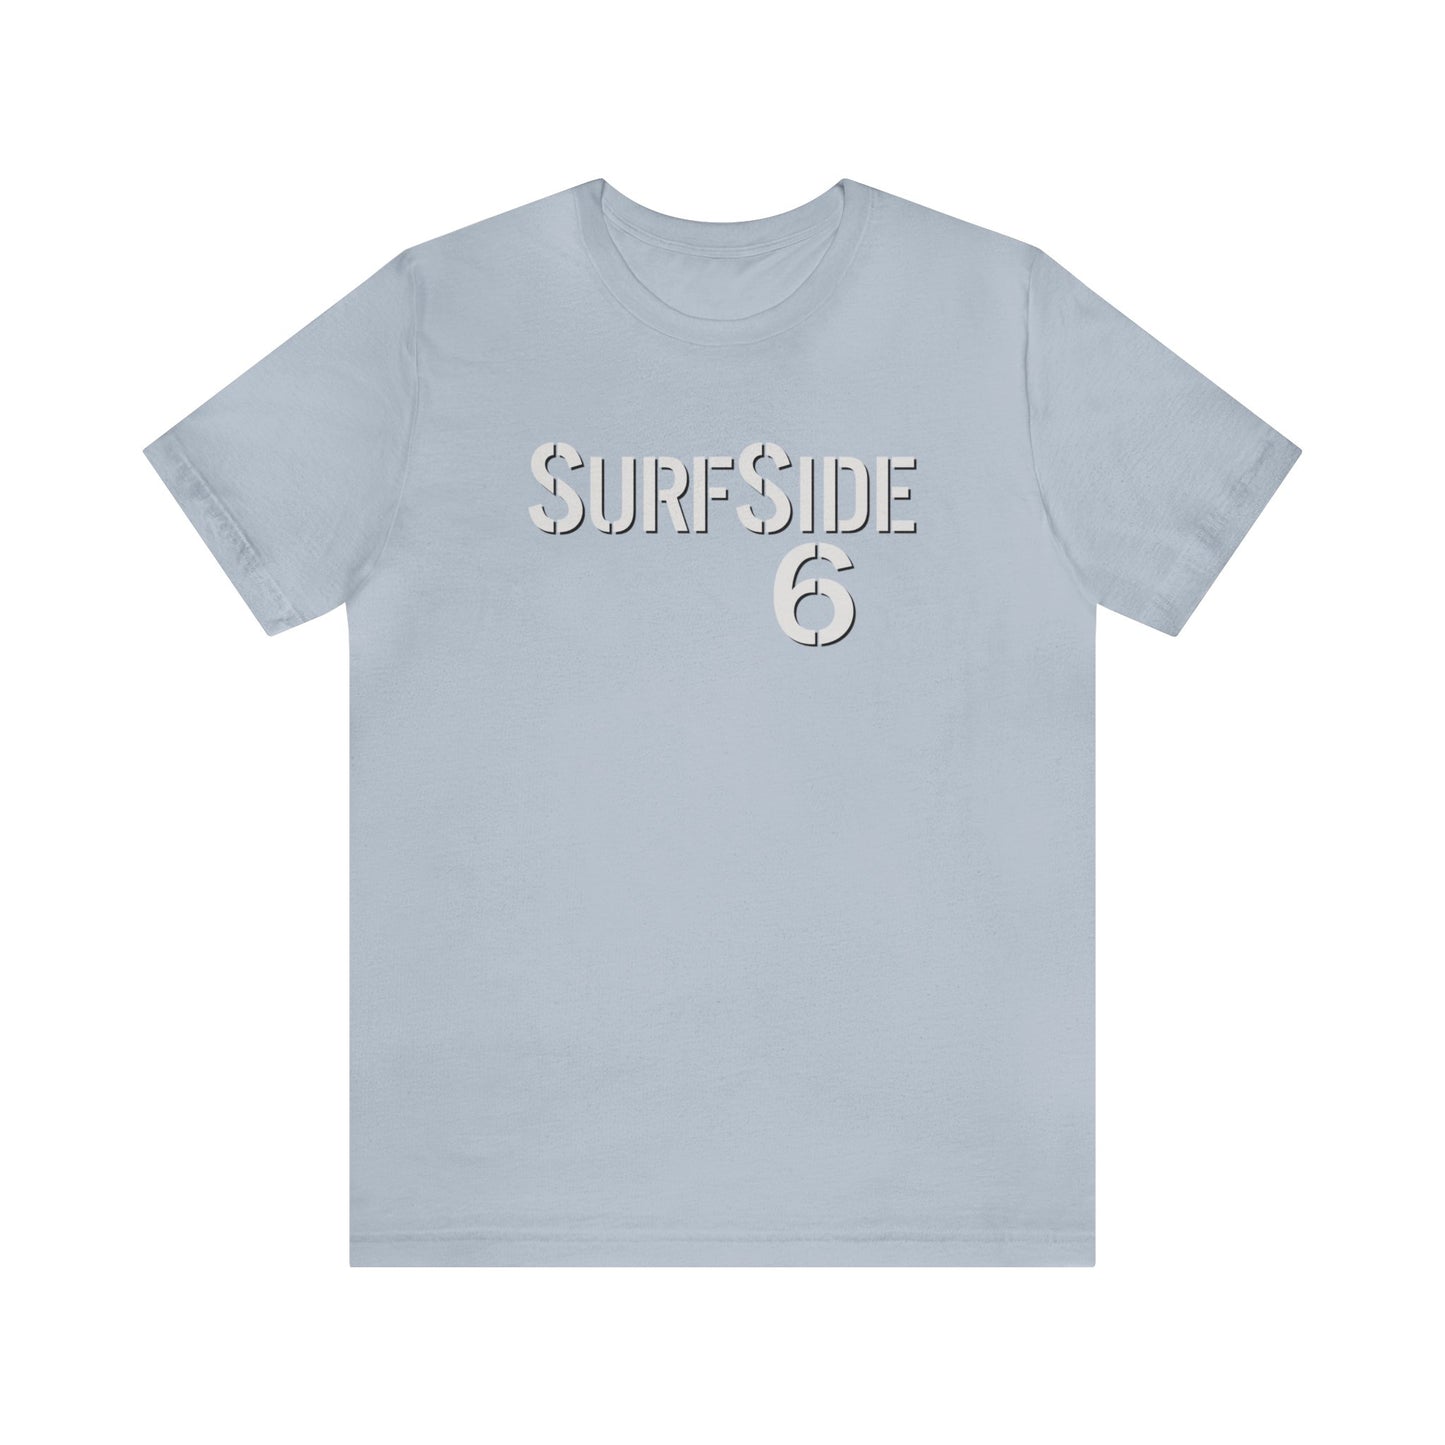 SurfSide 6 - Unisex T-Shirt